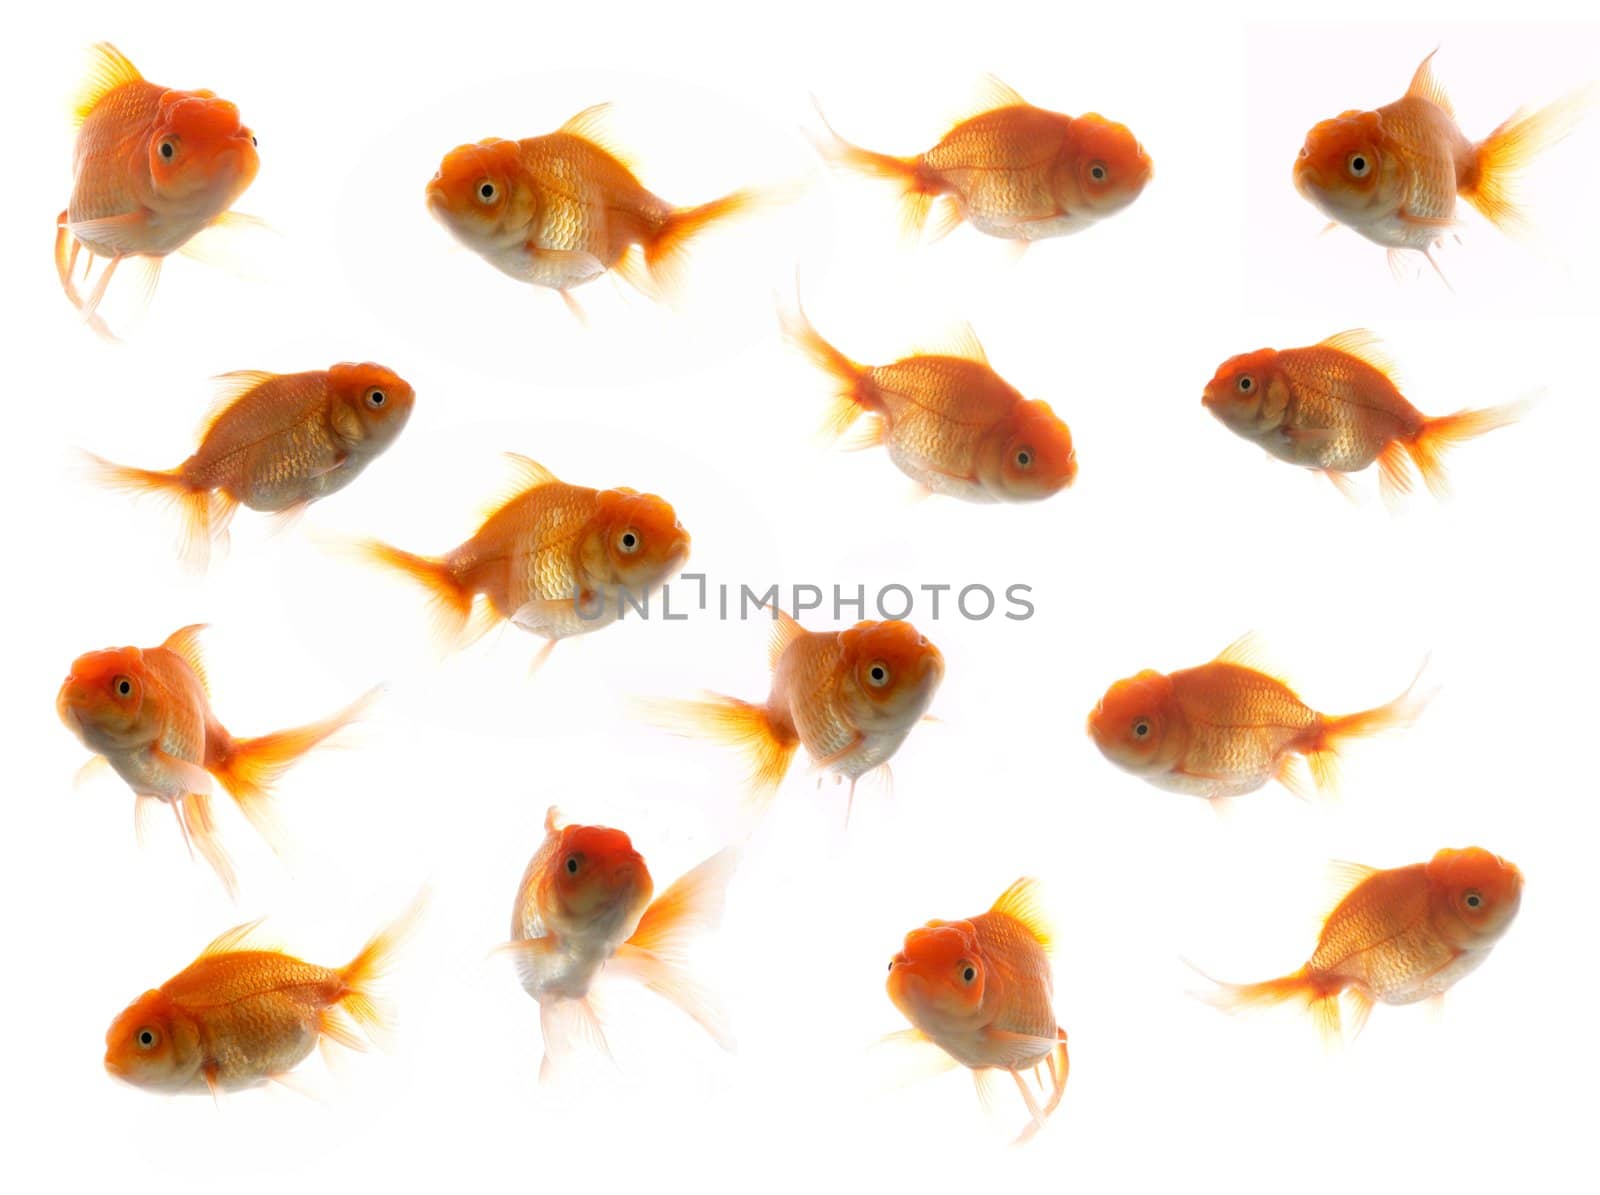 Much goldfish by velkol